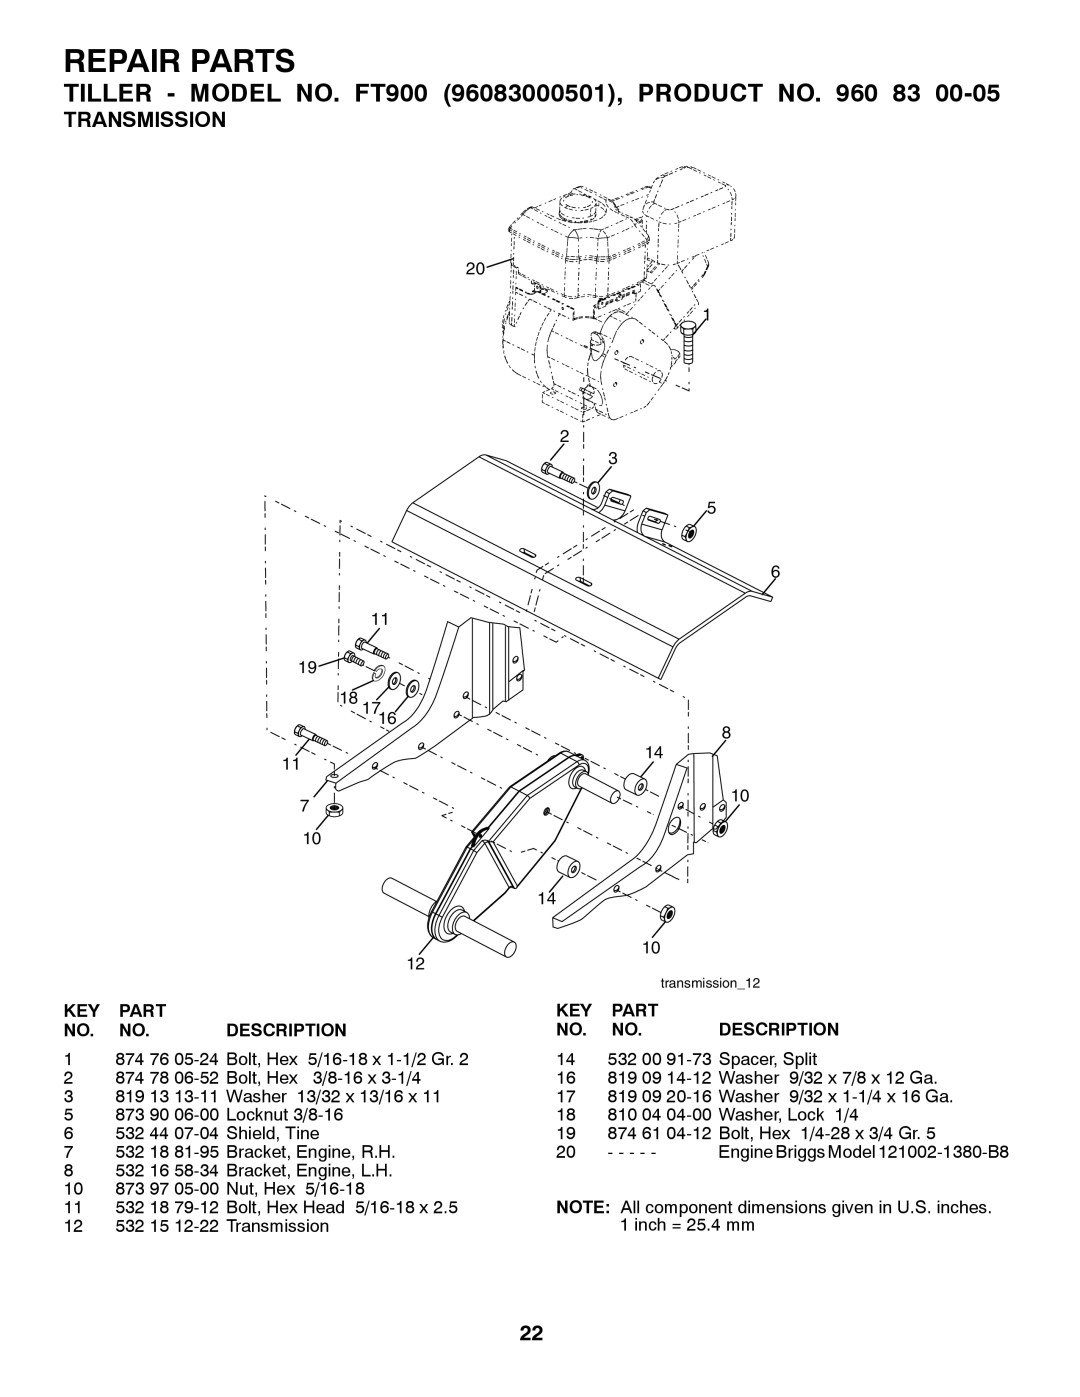 Husqvarna FT900 owner manual Key Part No. No. Description, Repair Parts, Transmission 